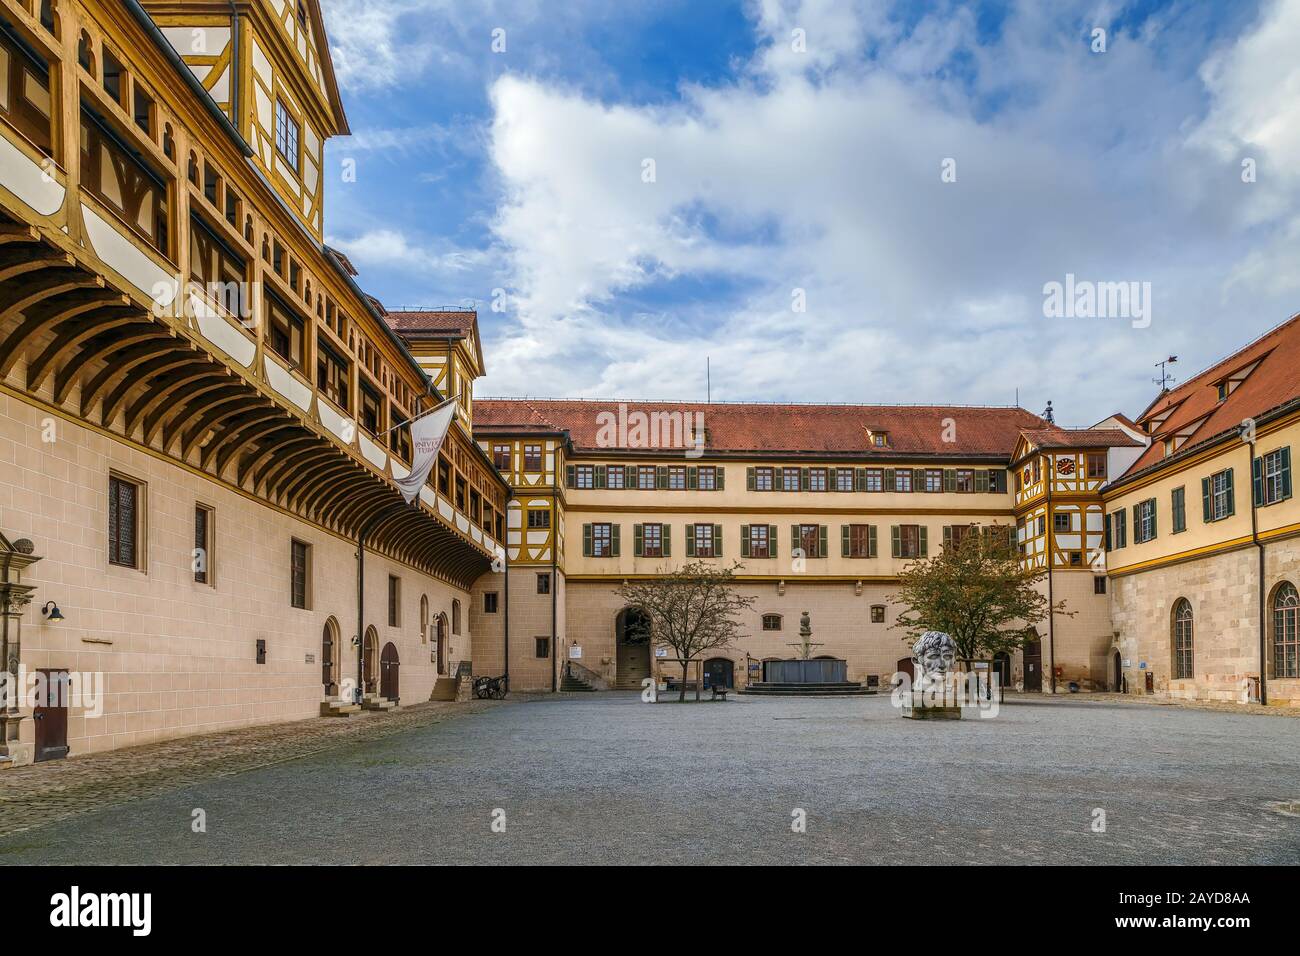 Hohentubingen Castle, Tubingen, Germany Stock Photo